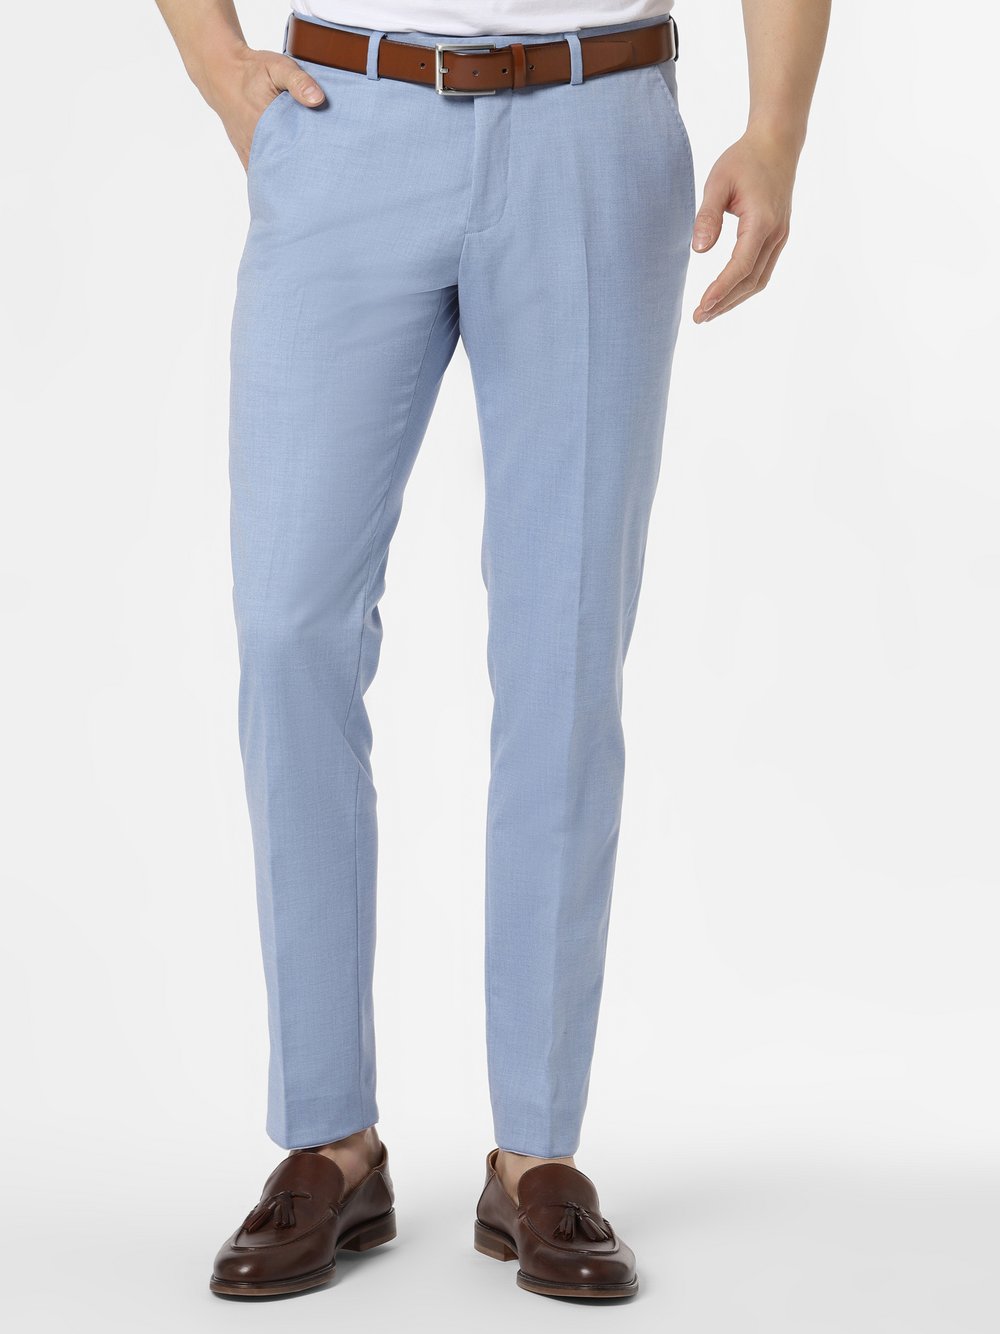 Finshley & Harding - Męskie spodnie od garnituru modułowego – Kalifornia, niebieski